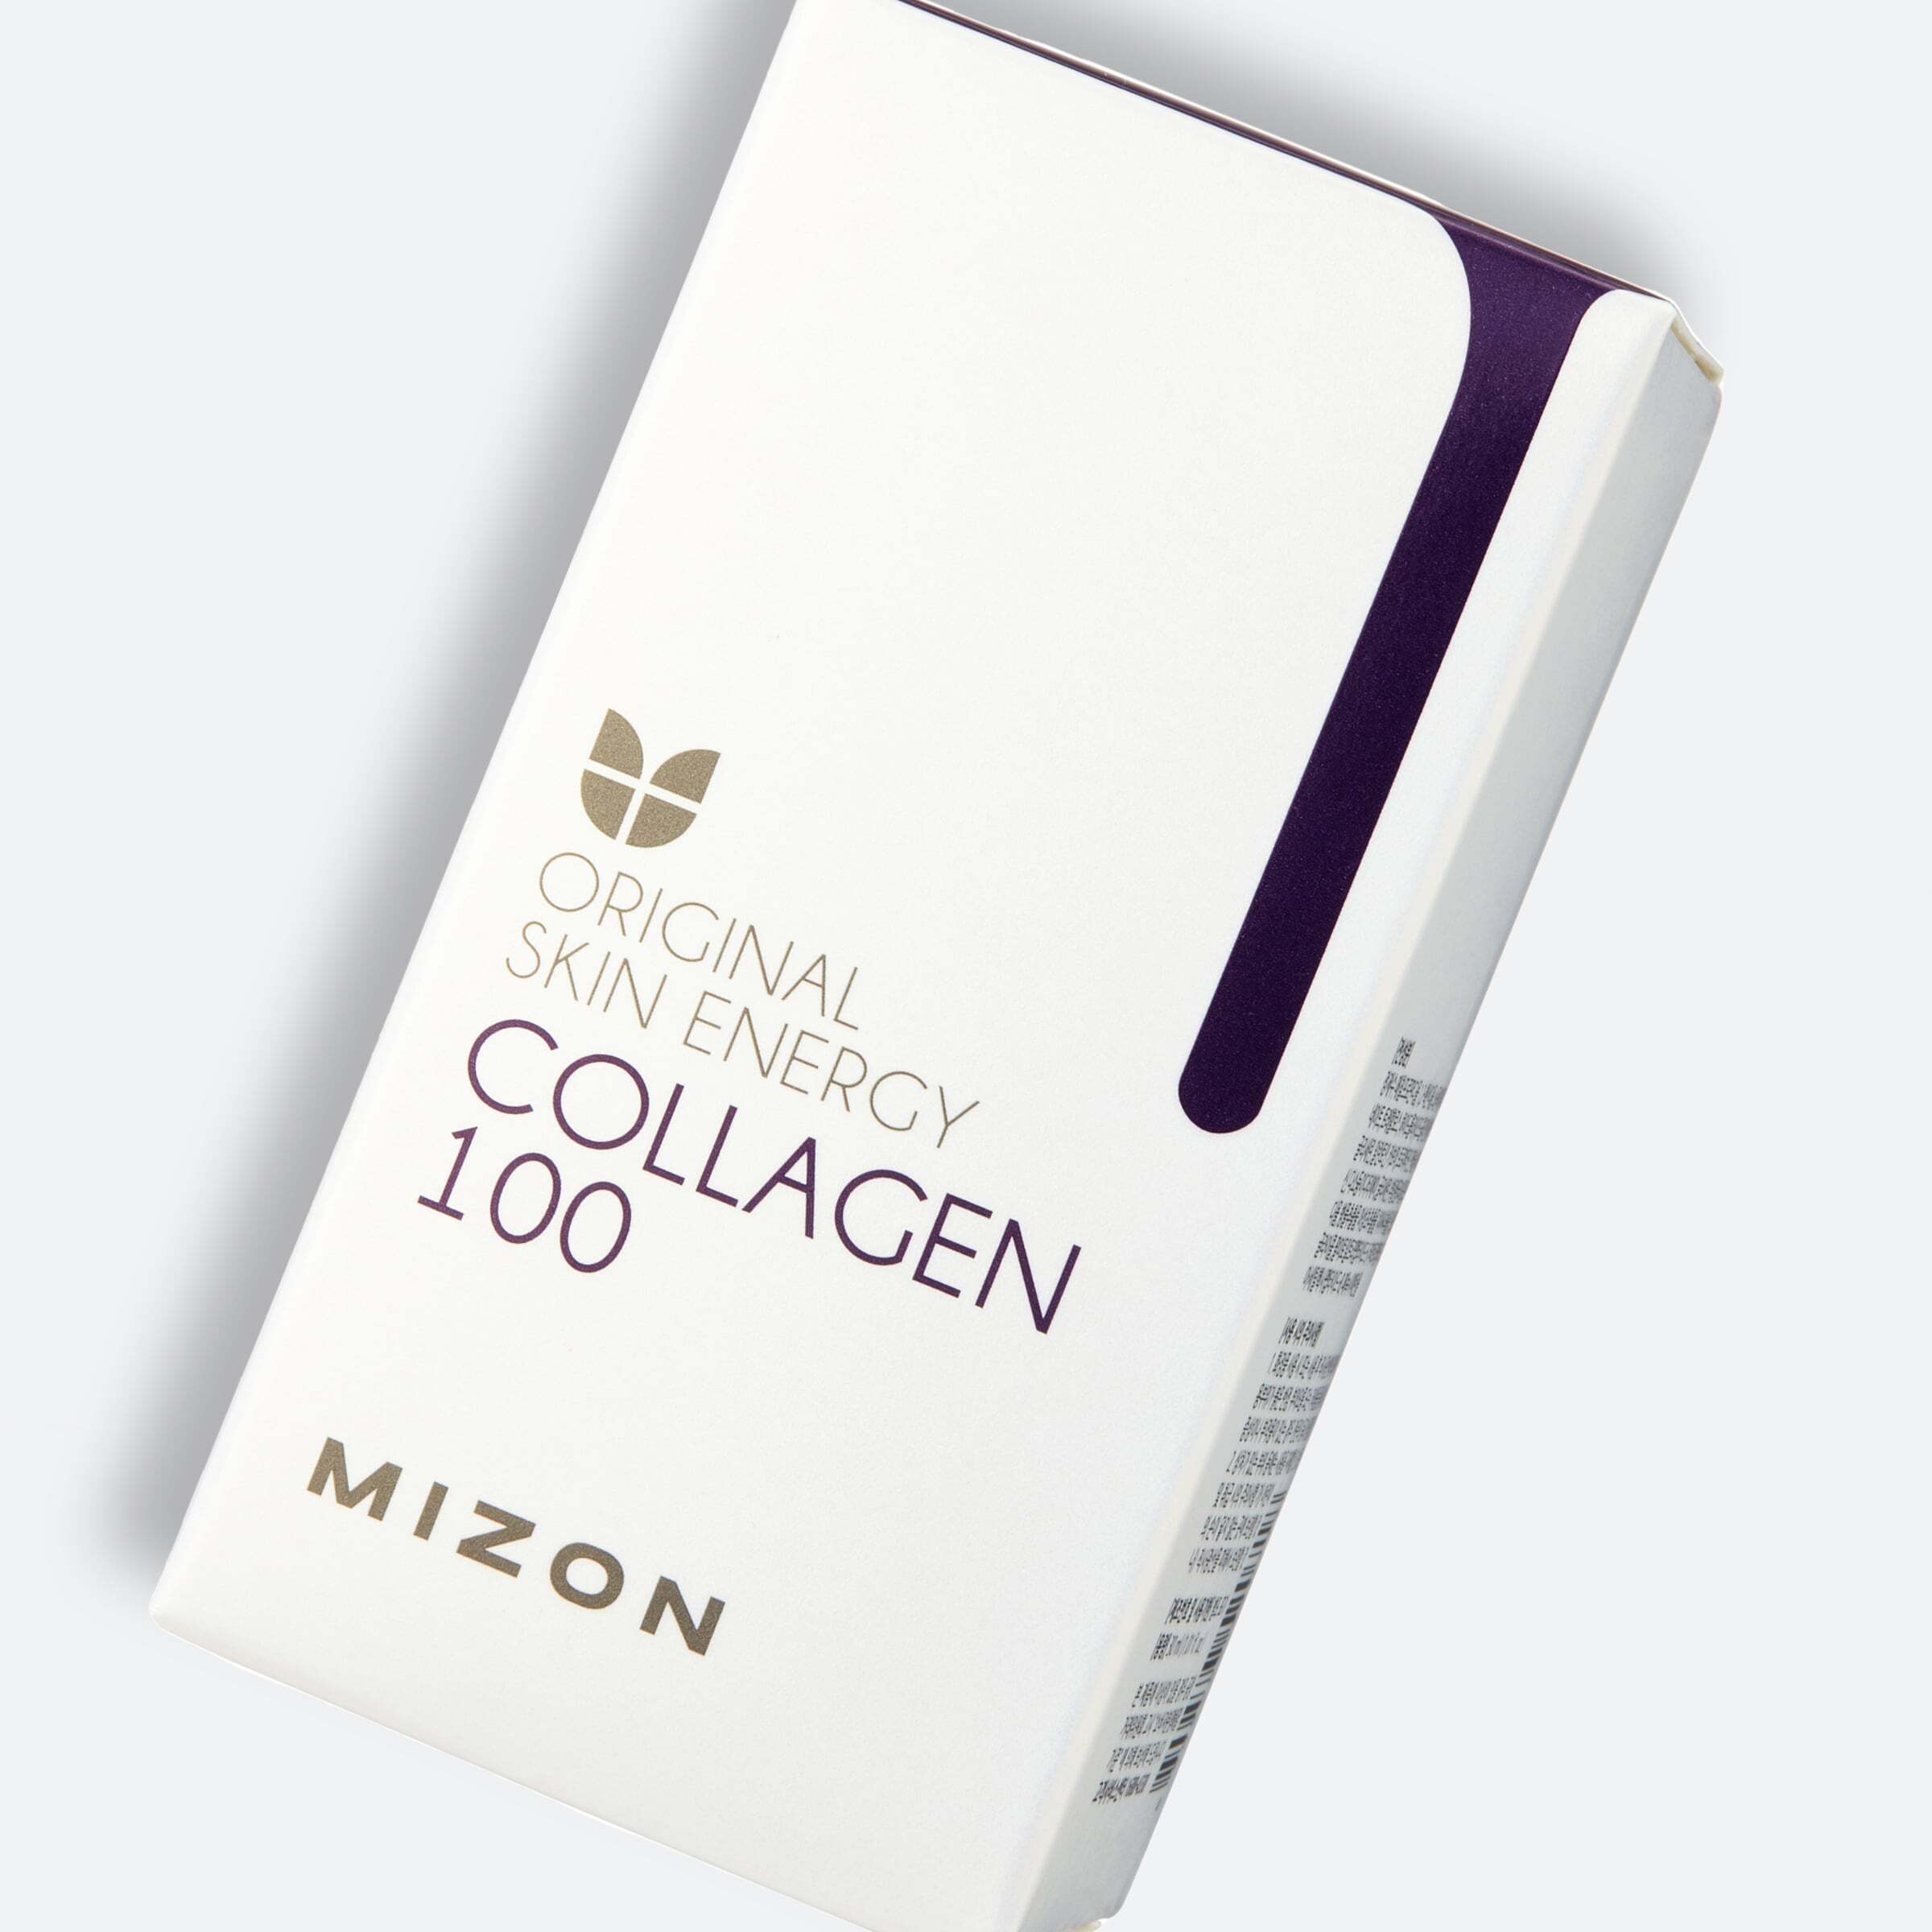 Сыворотка для лица с коллагеном Mizon Original Skin Energy Collagen 100 Ampoulе 30мл фото 8